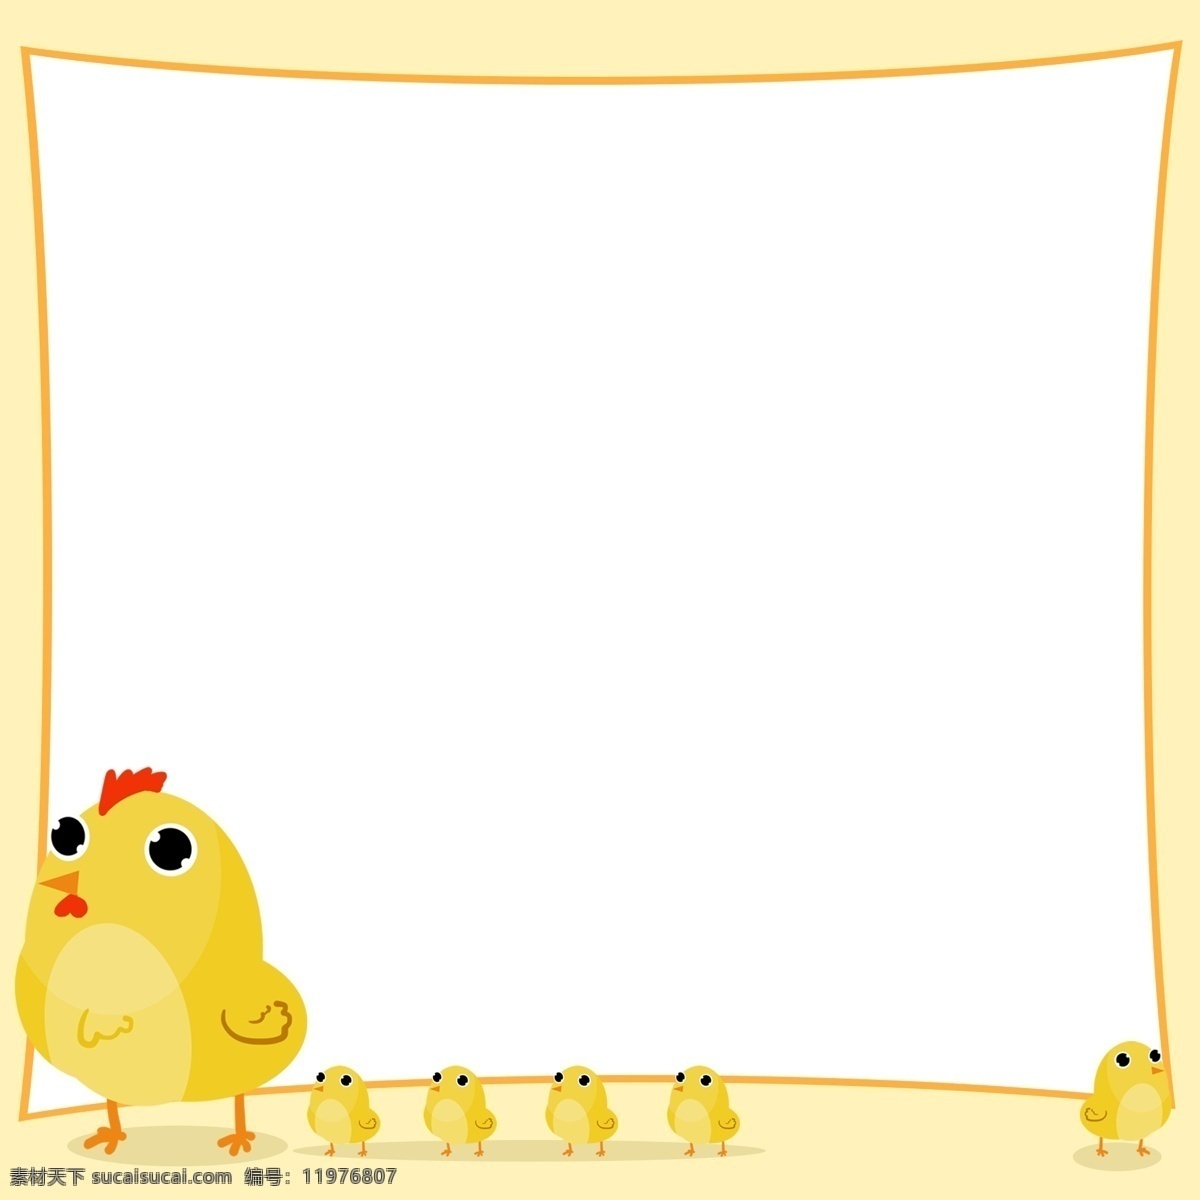 手绘 动物 小鸡 边框 黄色的边框 可爱的小鸡 卡通边框 手绘动物边框 可爱的动物 黄色的小鸡